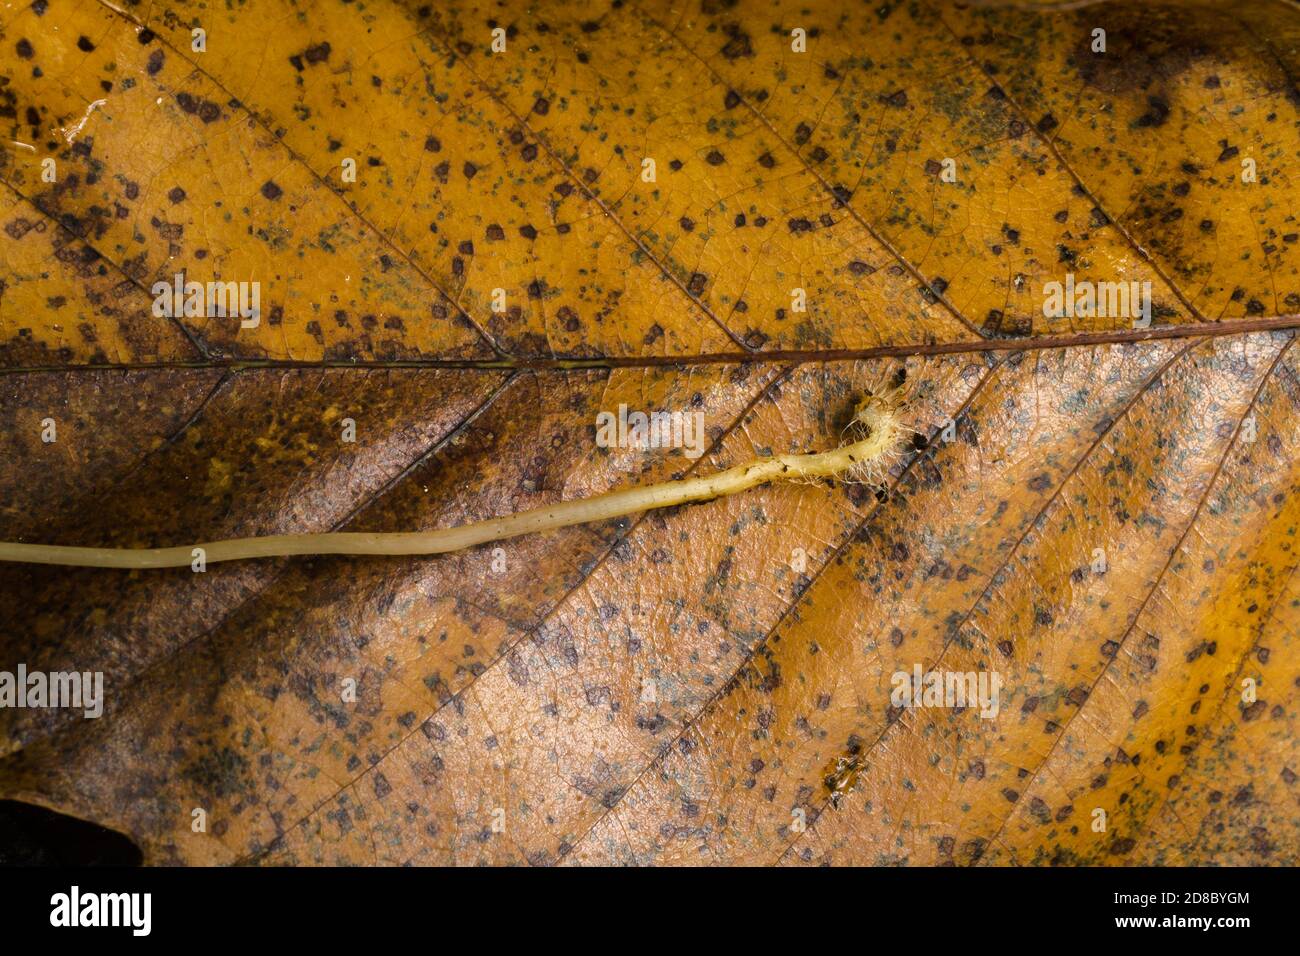 Teil des Stammes und Myzel des mycena galericulata oder Feenhelmpilz, ruhend auf einem Blatt. Stockfoto